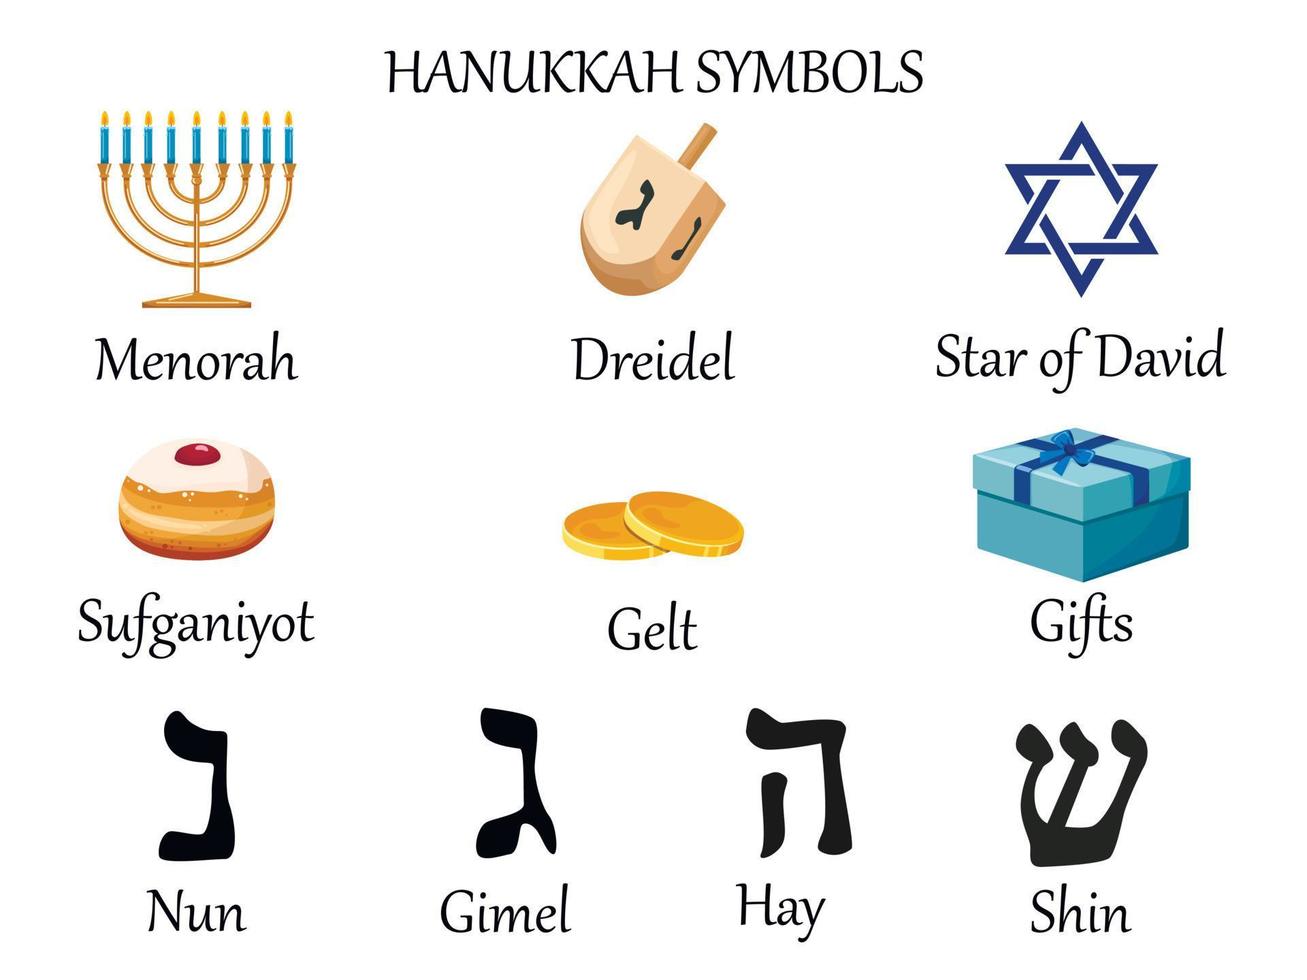 símbolos de hanukkah. colección de coloridos símbolos de dibujos animados de hanukkah con menorah, dreidel, gelt, estrella de david, regalo, sufganiyot y letras del alfabeto hebreo vector